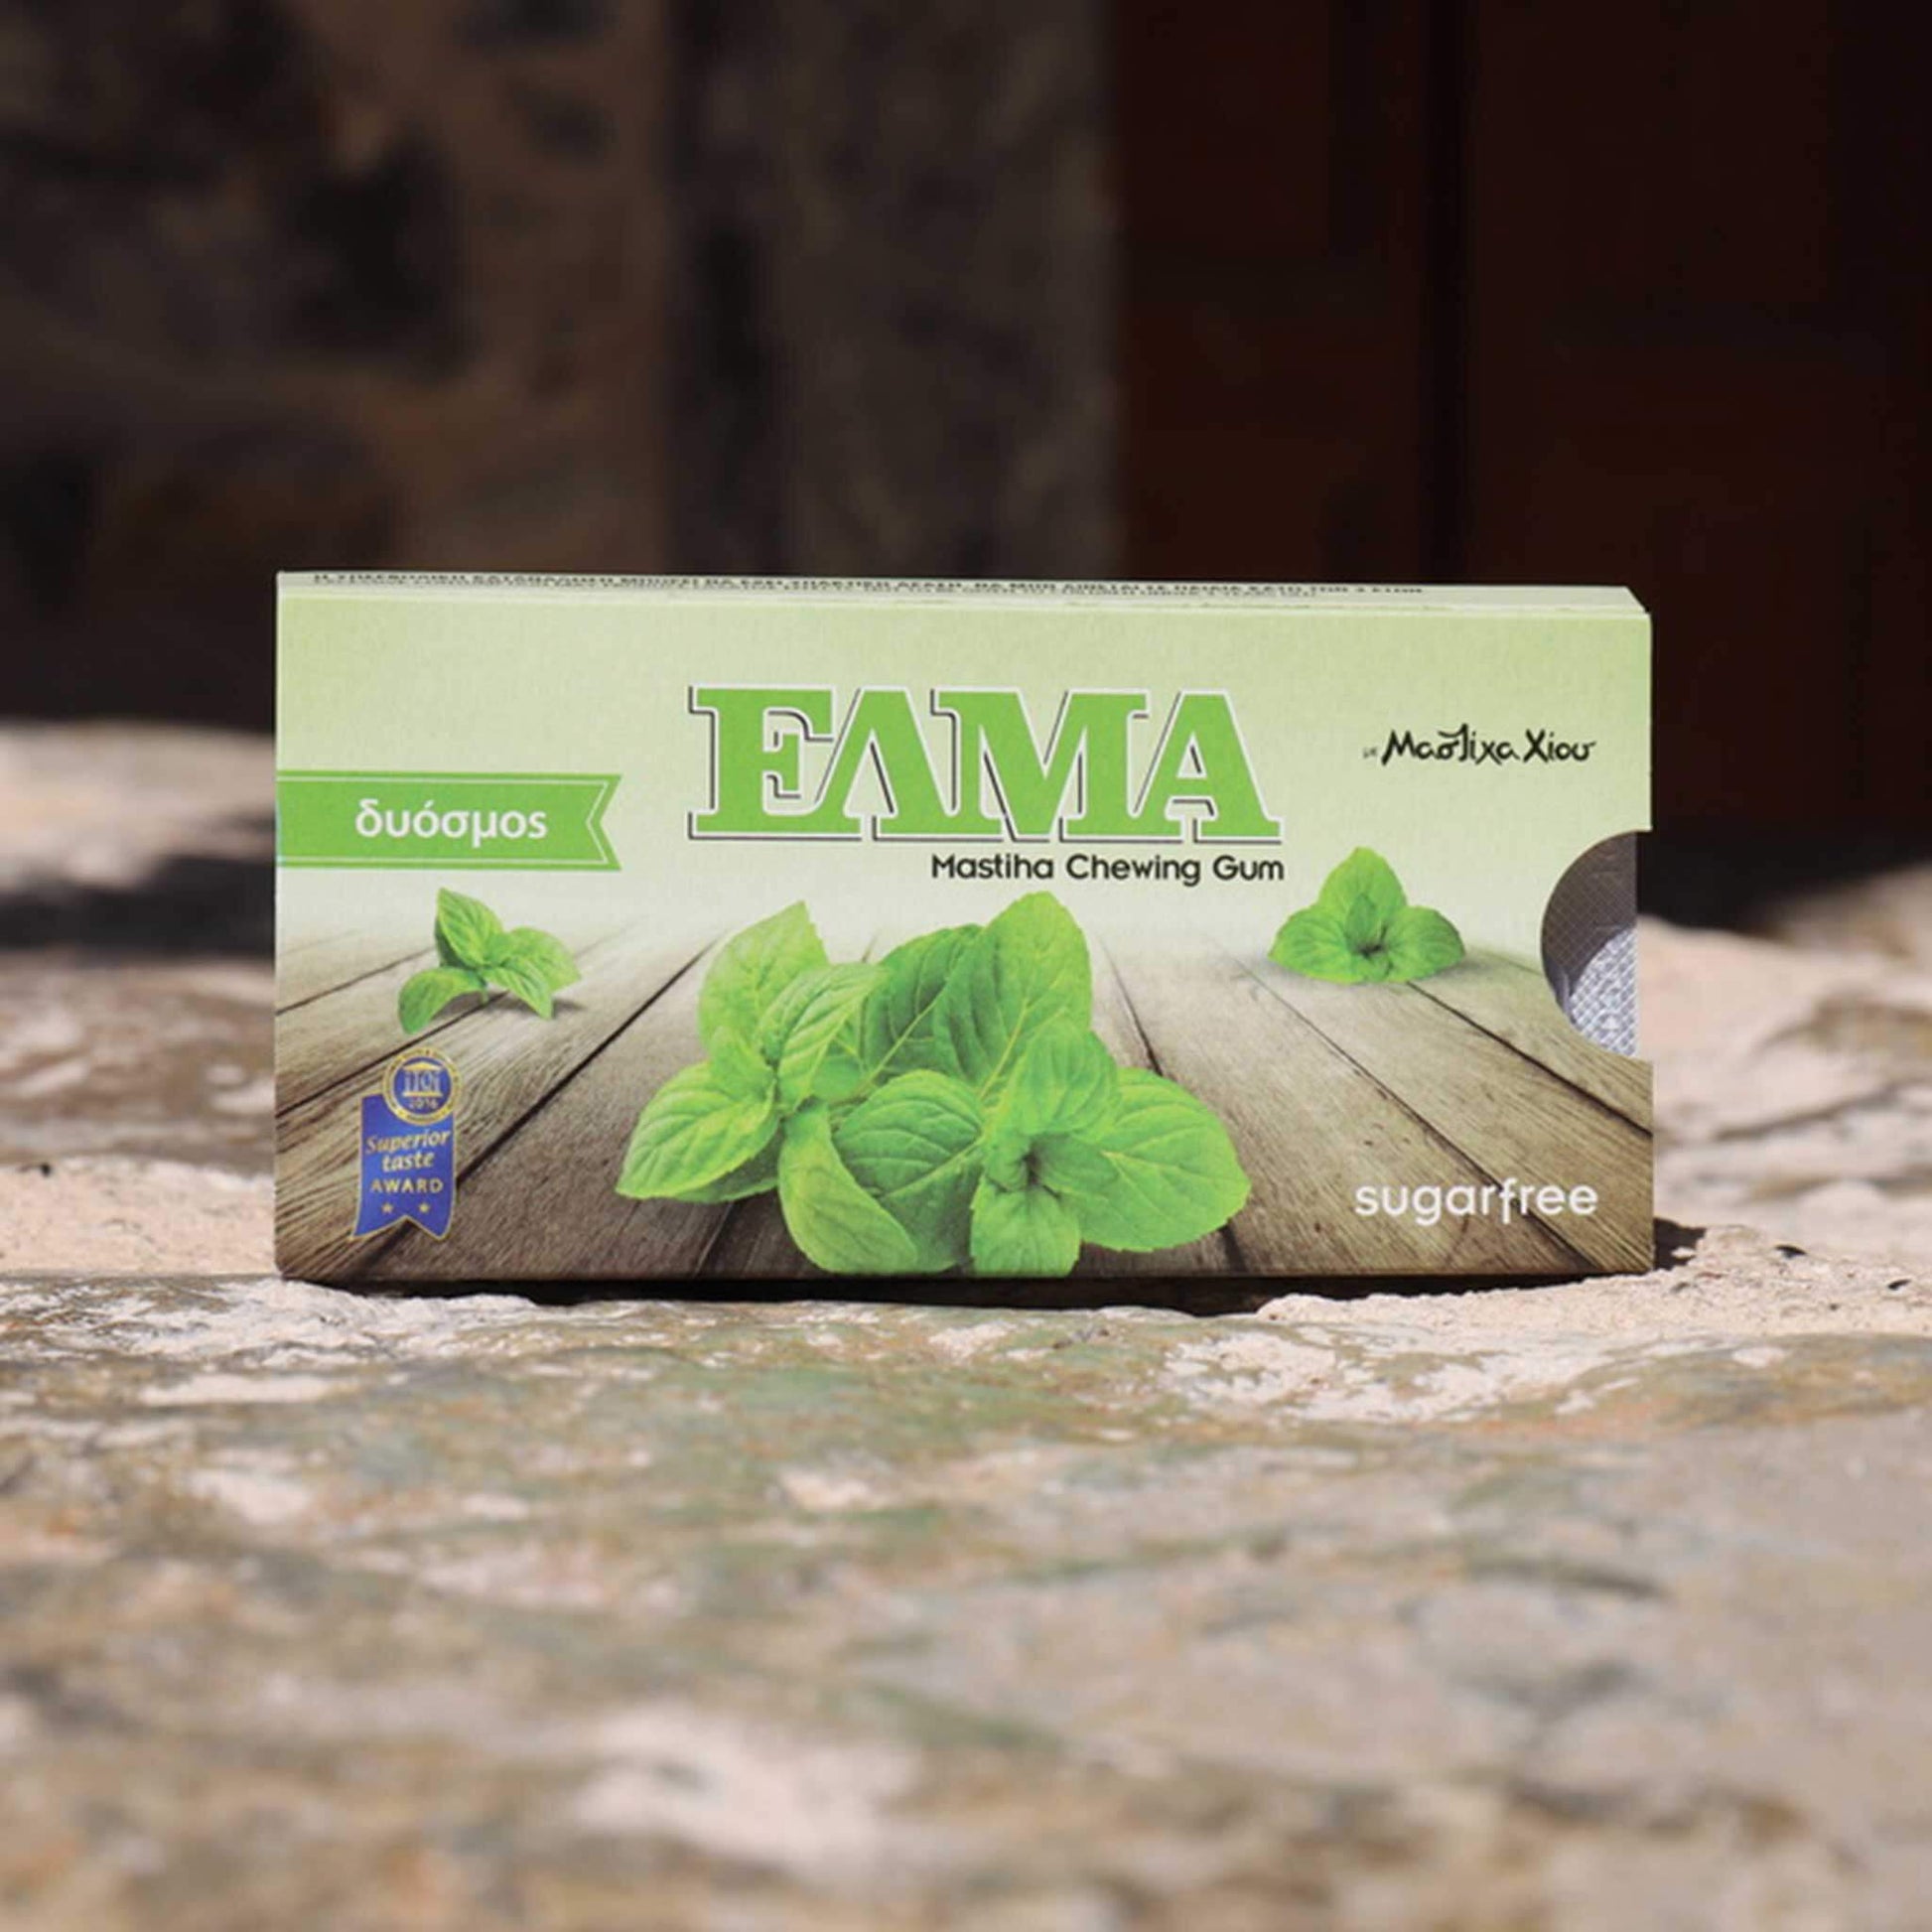 ELMA Spearmint with mastic gum